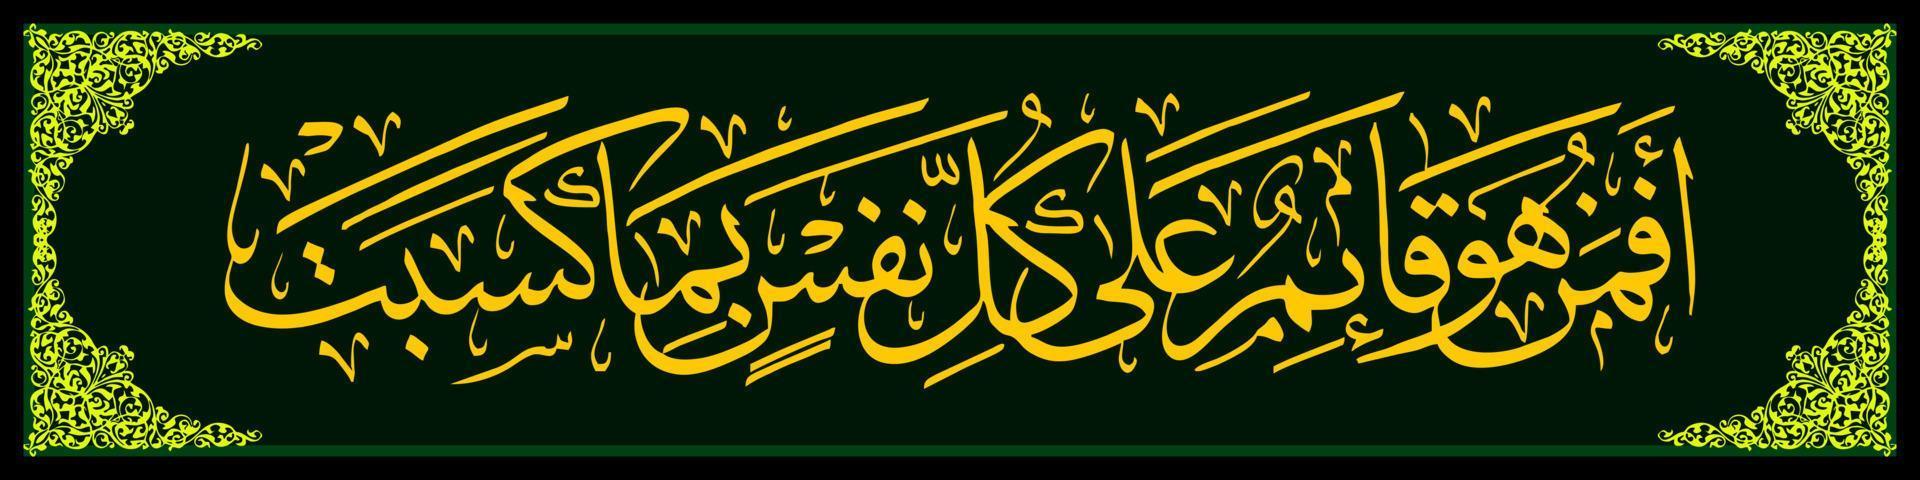 arabische Kalligrafie , al qur'an surah ar ra'd 33, übersetzen dann ist es gott, der jede seele vor dem schützt, was sie tut, genauso wie die anderen, die sie zu partnern für allah machen. . vektor